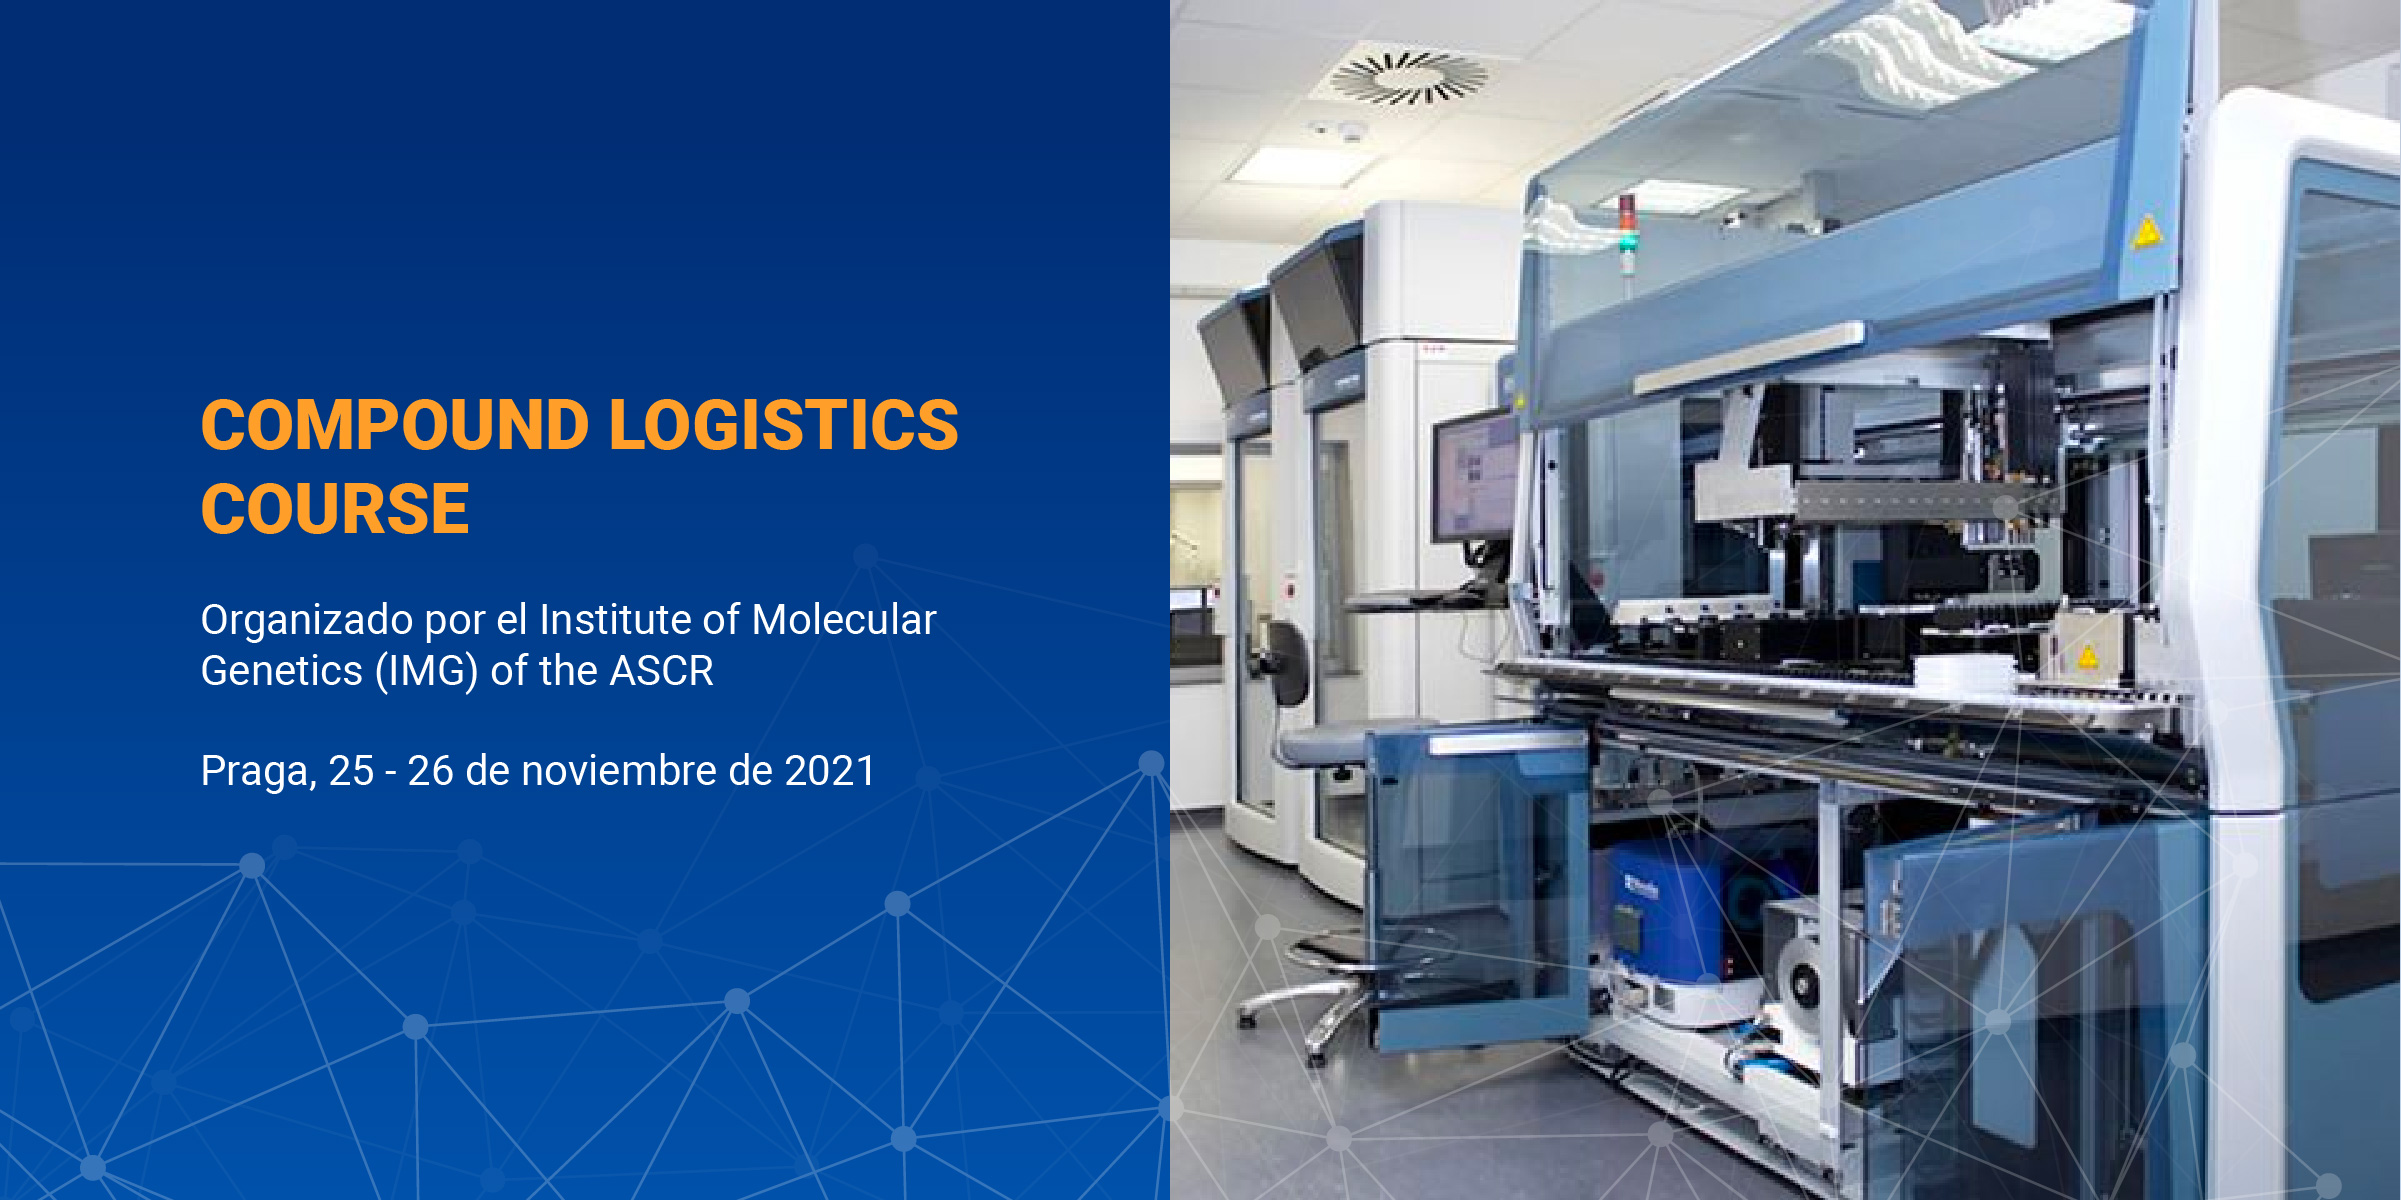 COMPOUND LOGISTICS COURSE. Organizado por el Institute of Molecular Genetics (IMG) of the ASCR, en Praga, los días 25 y 26 de noviembre de 2021